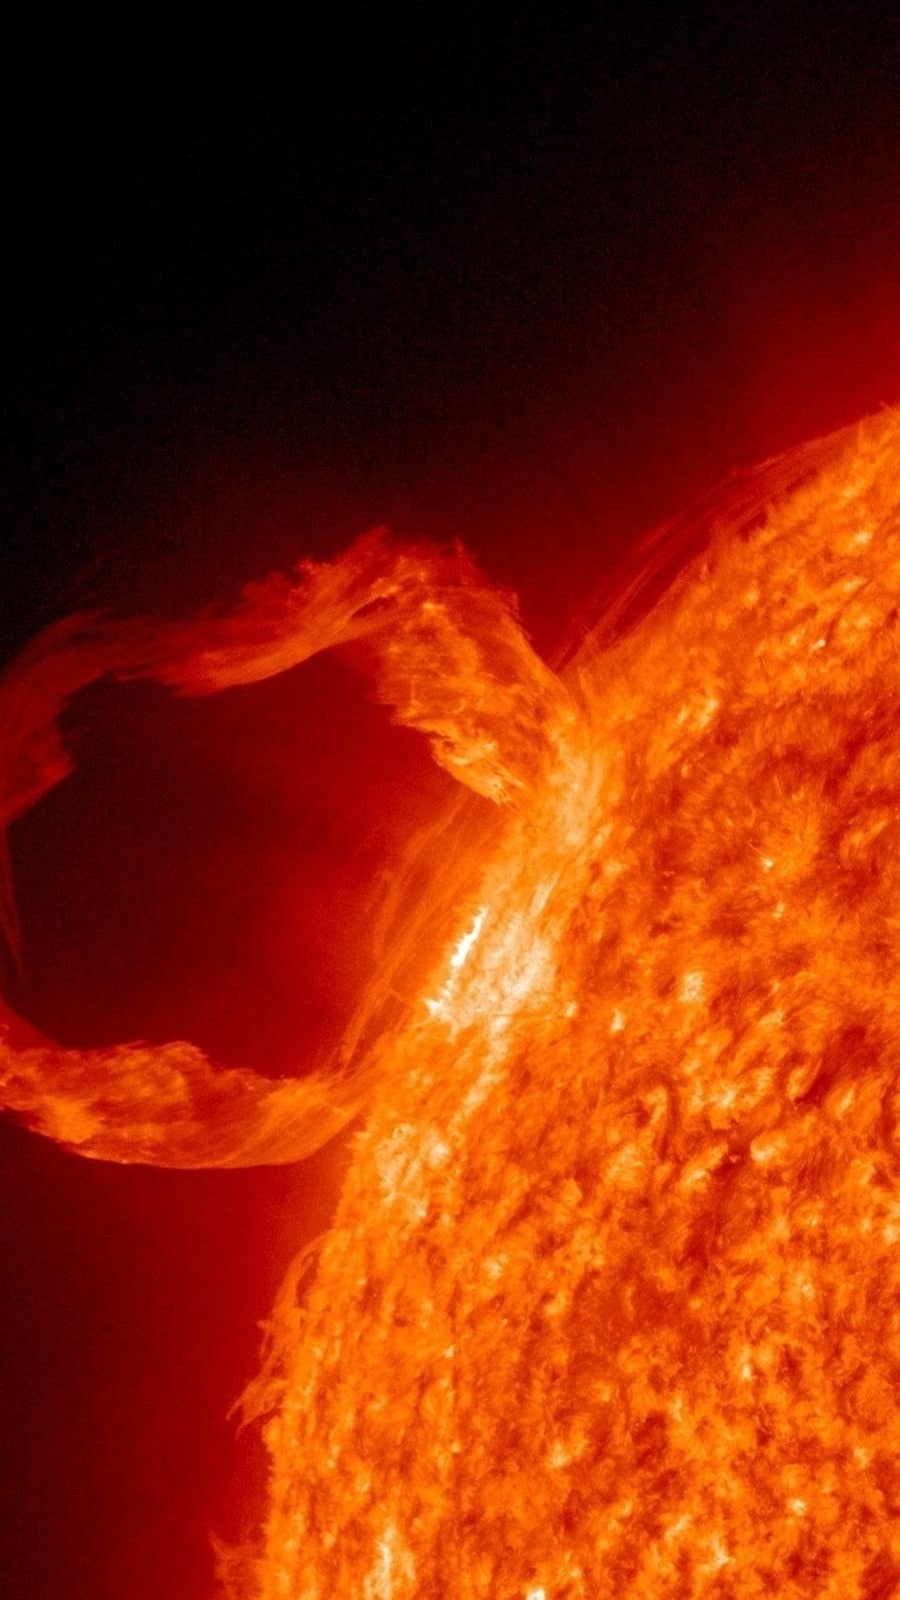 Alerta de tempestade solar: explosão solar de classe M pode ser lançada por manchas solares